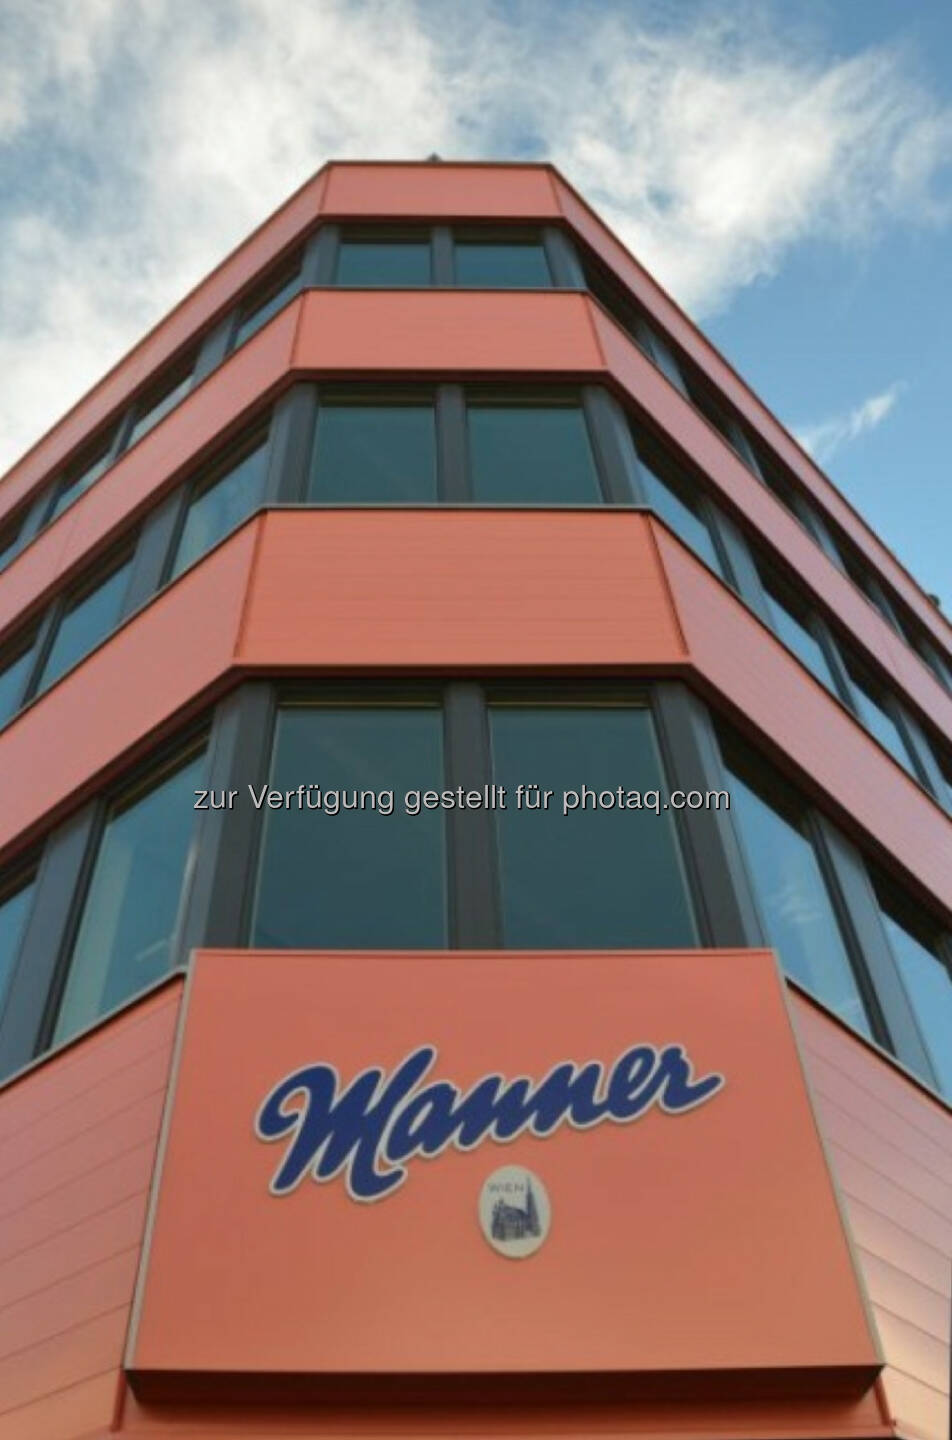 Erste Group Immorent baute ein neues Bürogebäude auf dem Firmensitz der Josef Manner & Comp. AG in Wien-Hernals und übernahm bei diesem Projekt auch die Finanzierung, die Projektsteuerung und die Generalplanung. Nach rund einem Jahr Bauzeit wurde das Bürogebäude nun feierlich eröffnet. Das Projekt verfügt über eine gesamte Bruttogeschoßfläche von rund 3.000 m² (c) Erste Group Immorent